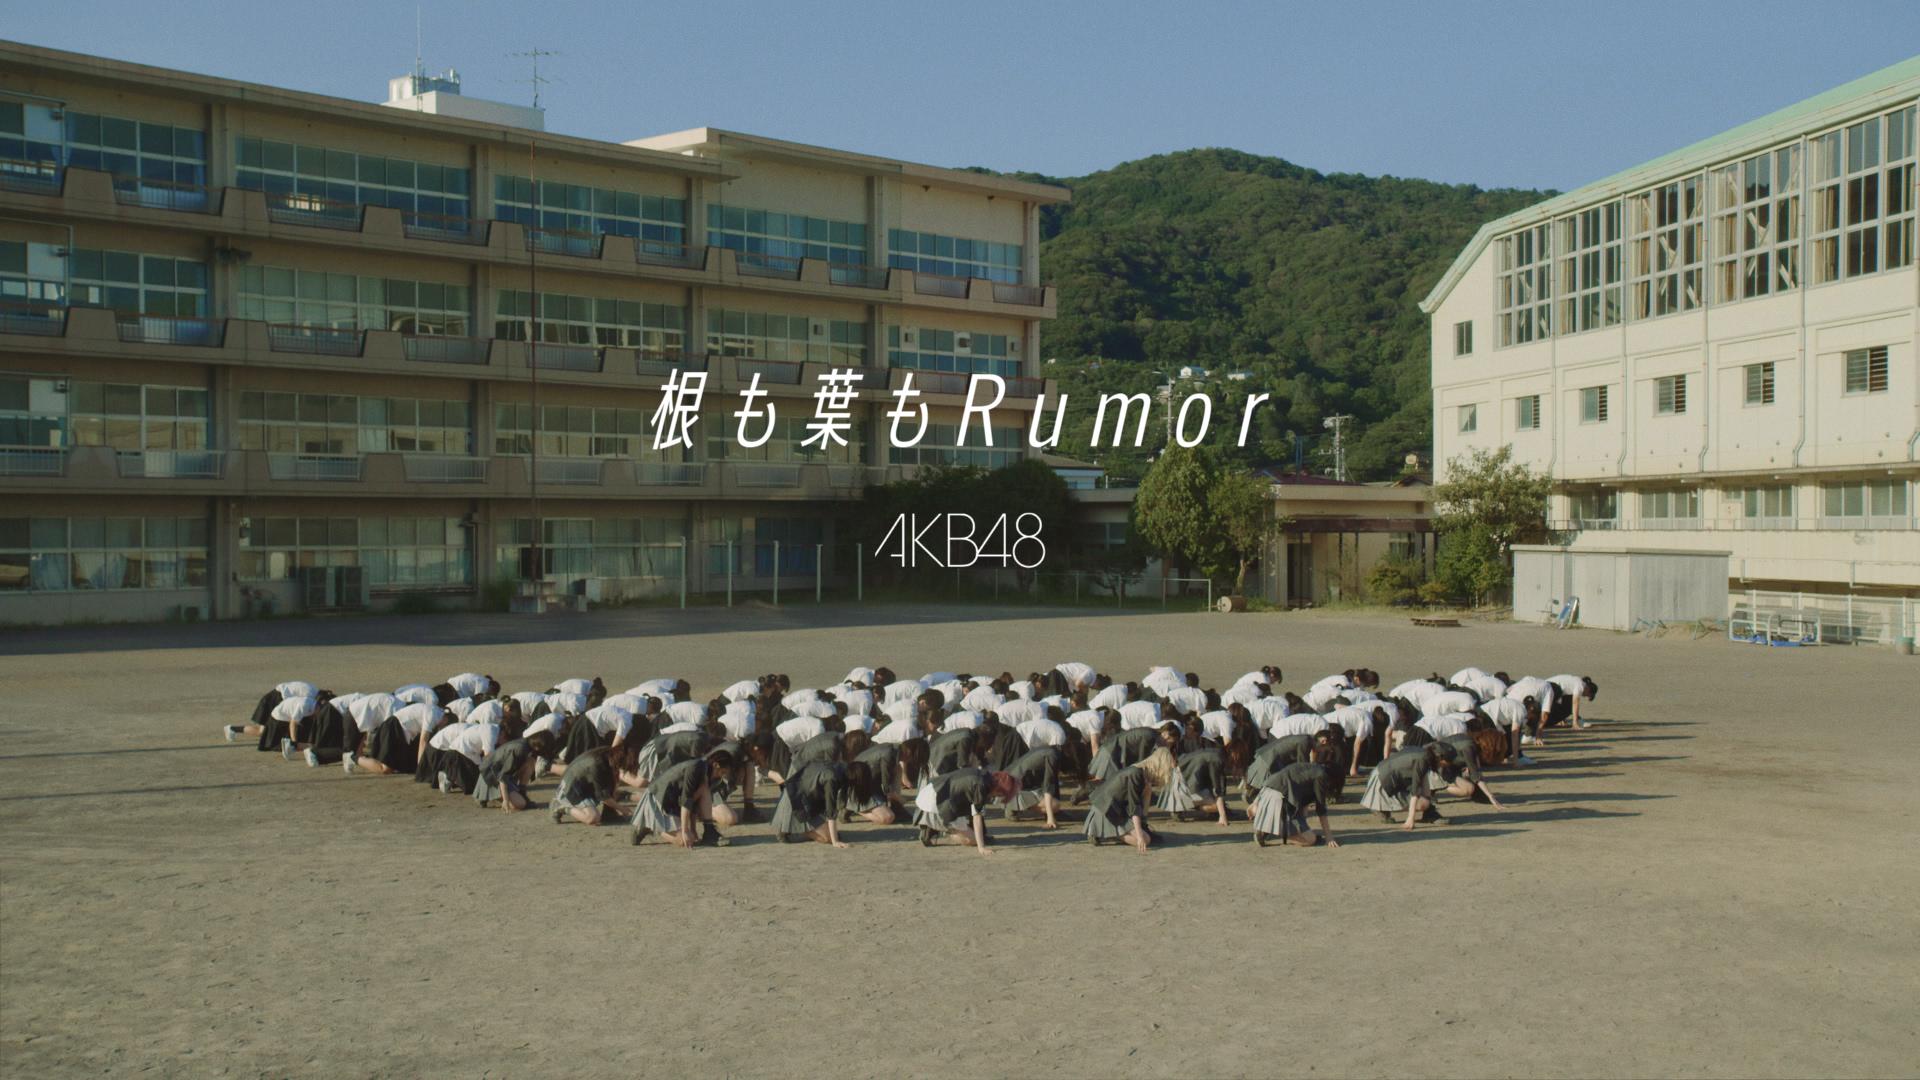 AKB48 - 根も葉もRumor